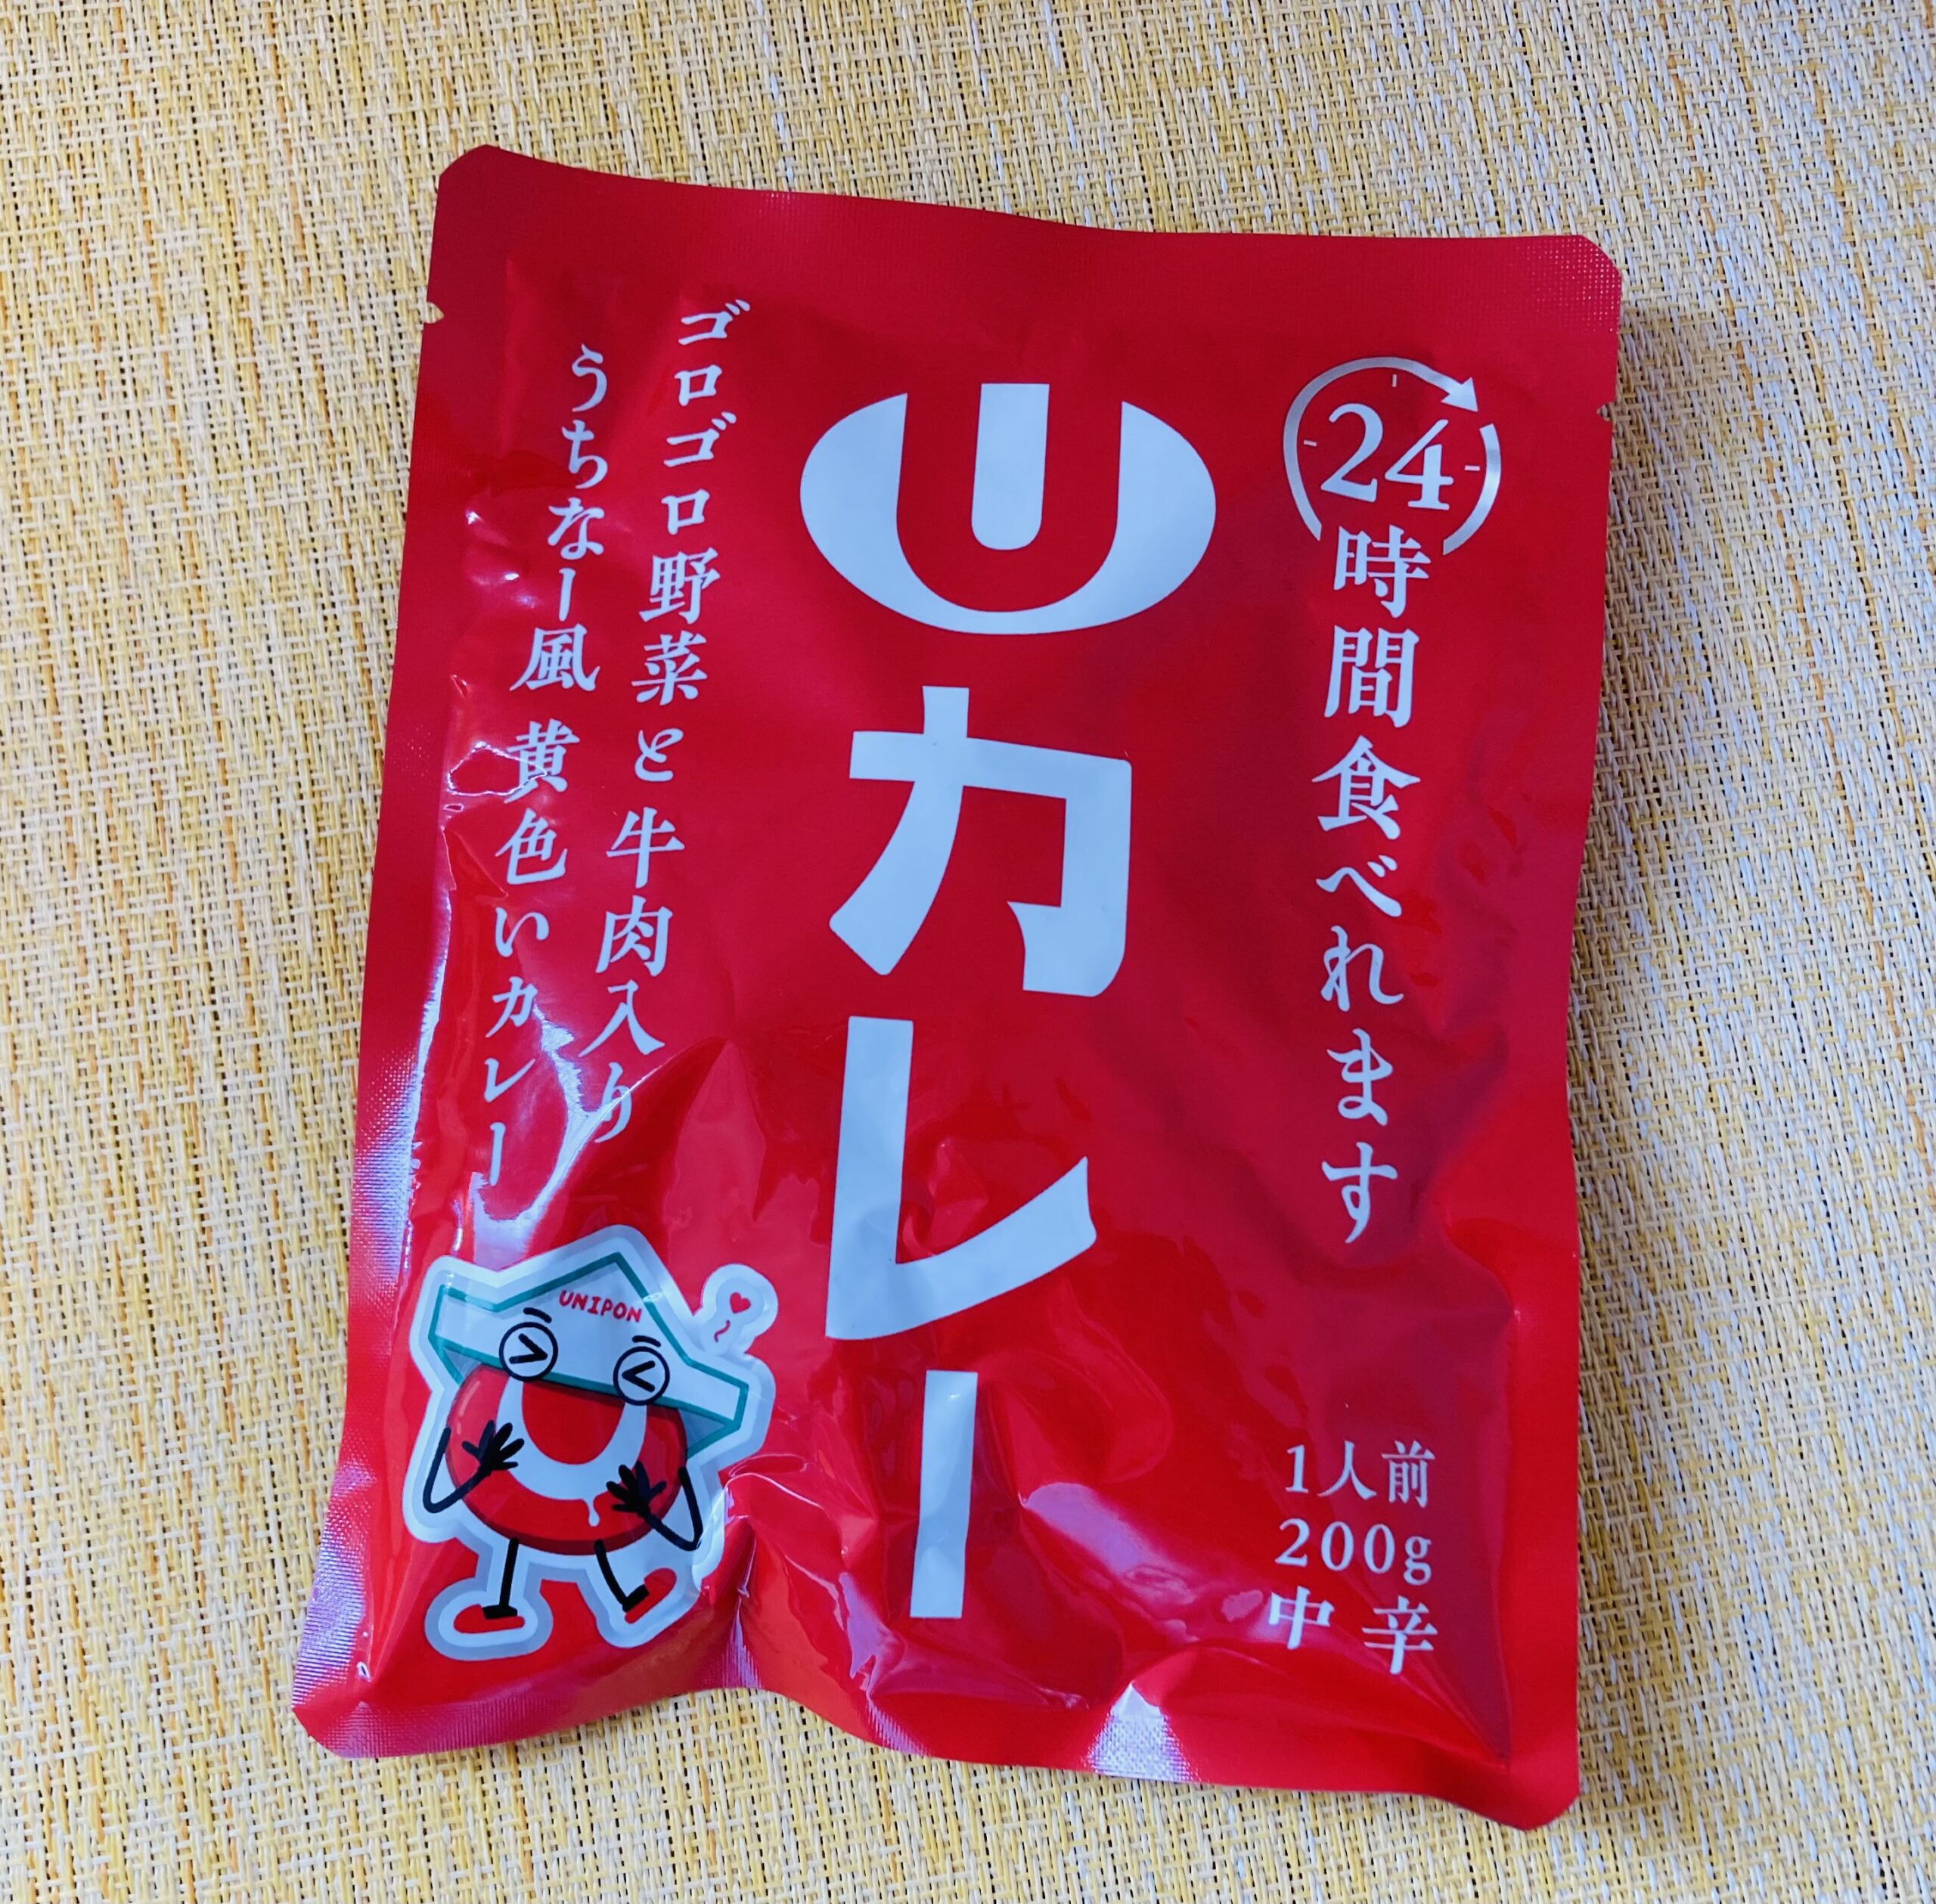 沖縄のスーパー「ユニオン」が販売している中辛カレーの赤いパッケージです。